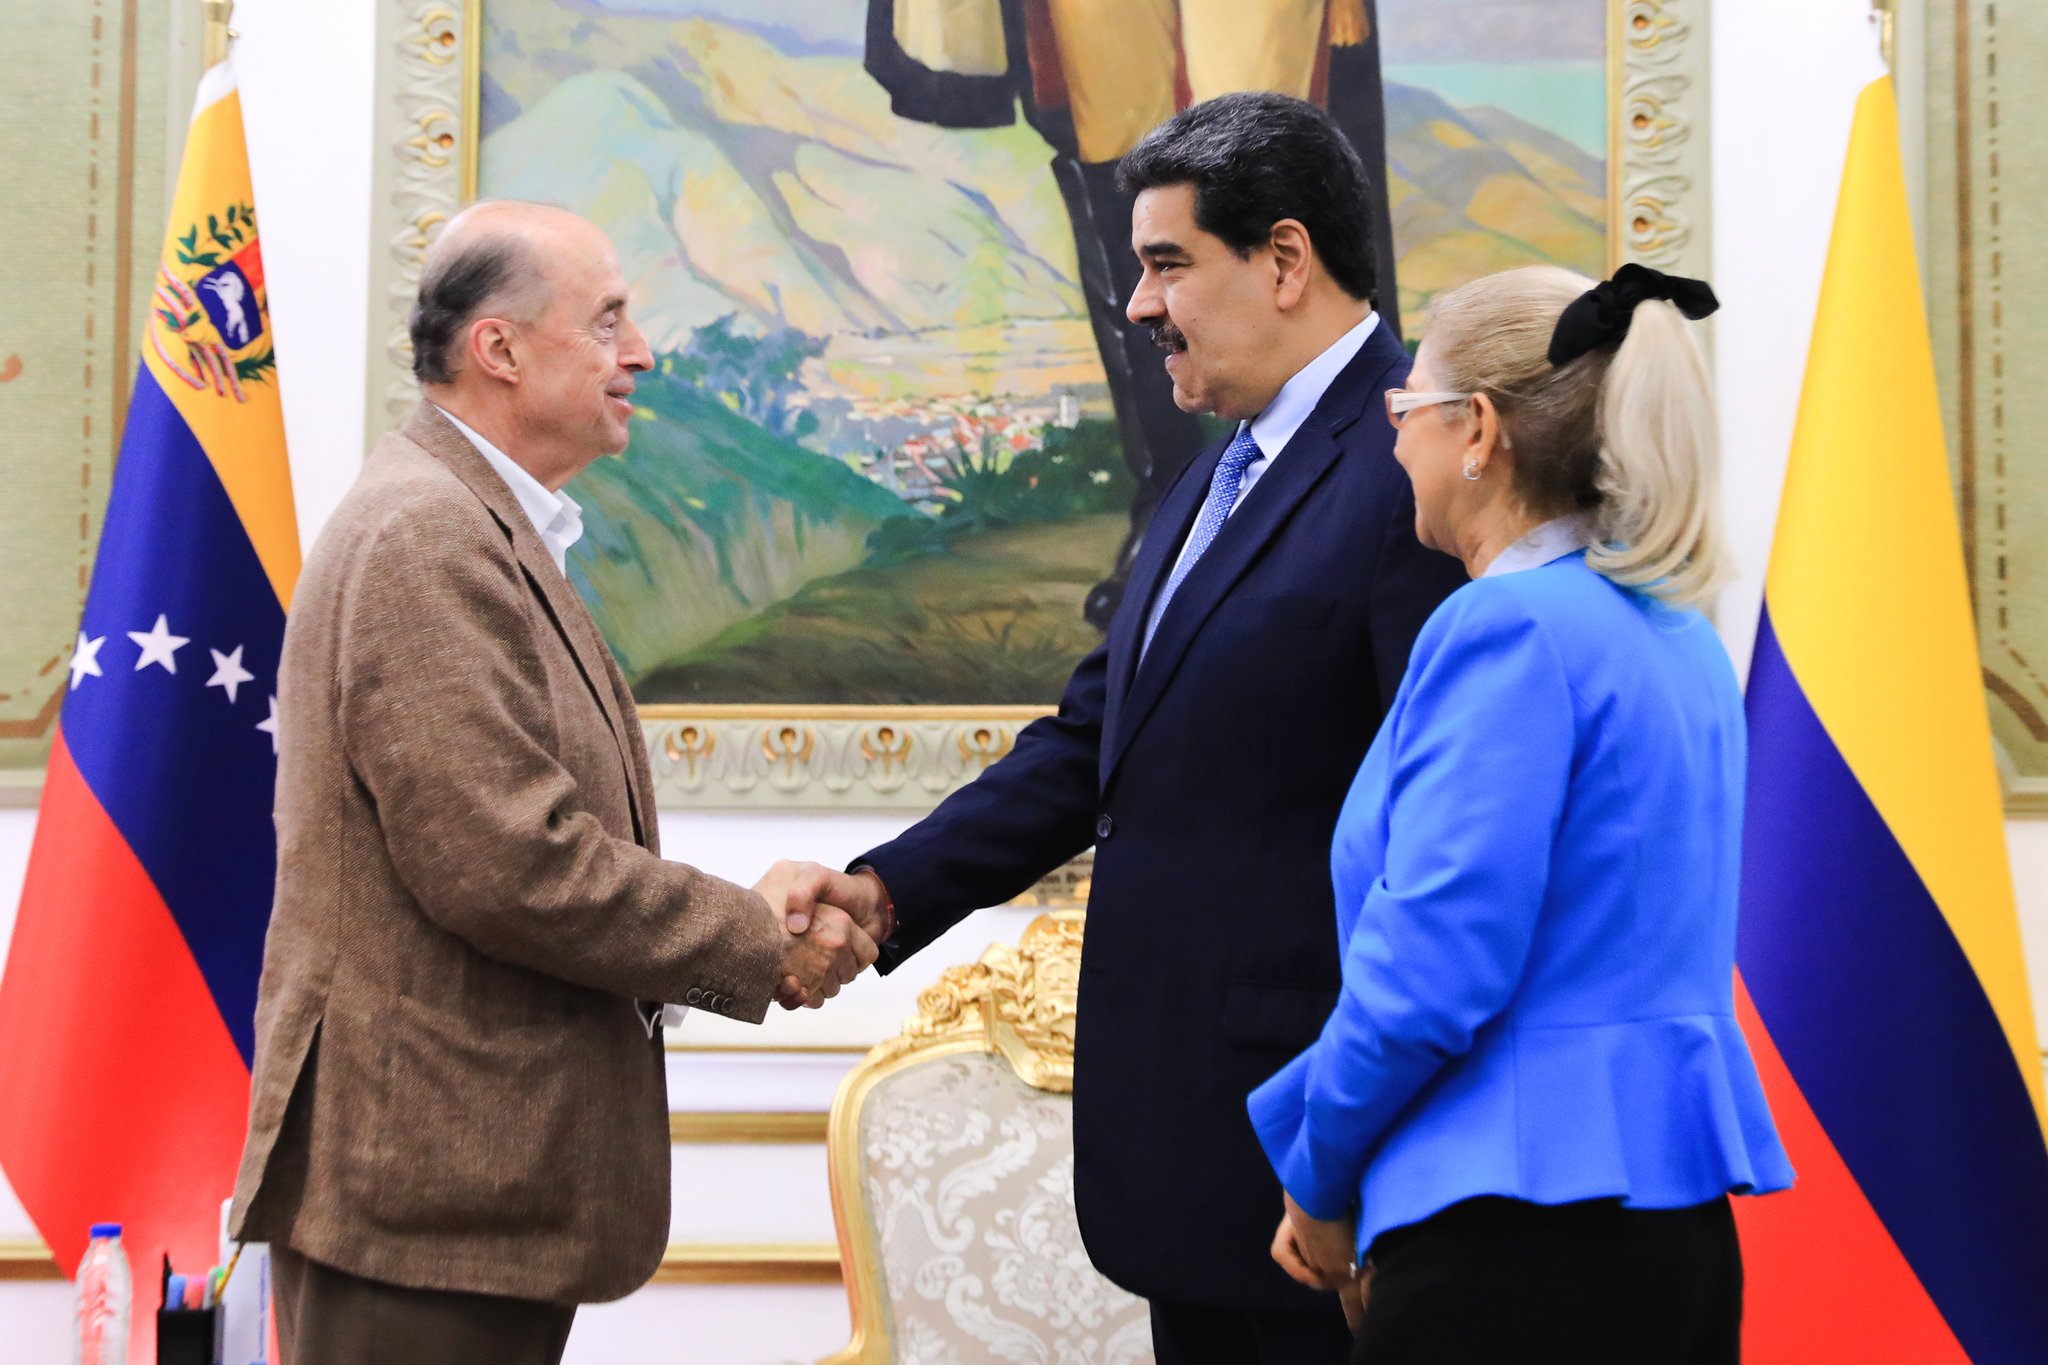 Maduro discutirá “detalles” de la conferencia por el diálogo con el canciller colombiano este domingo, según RCN